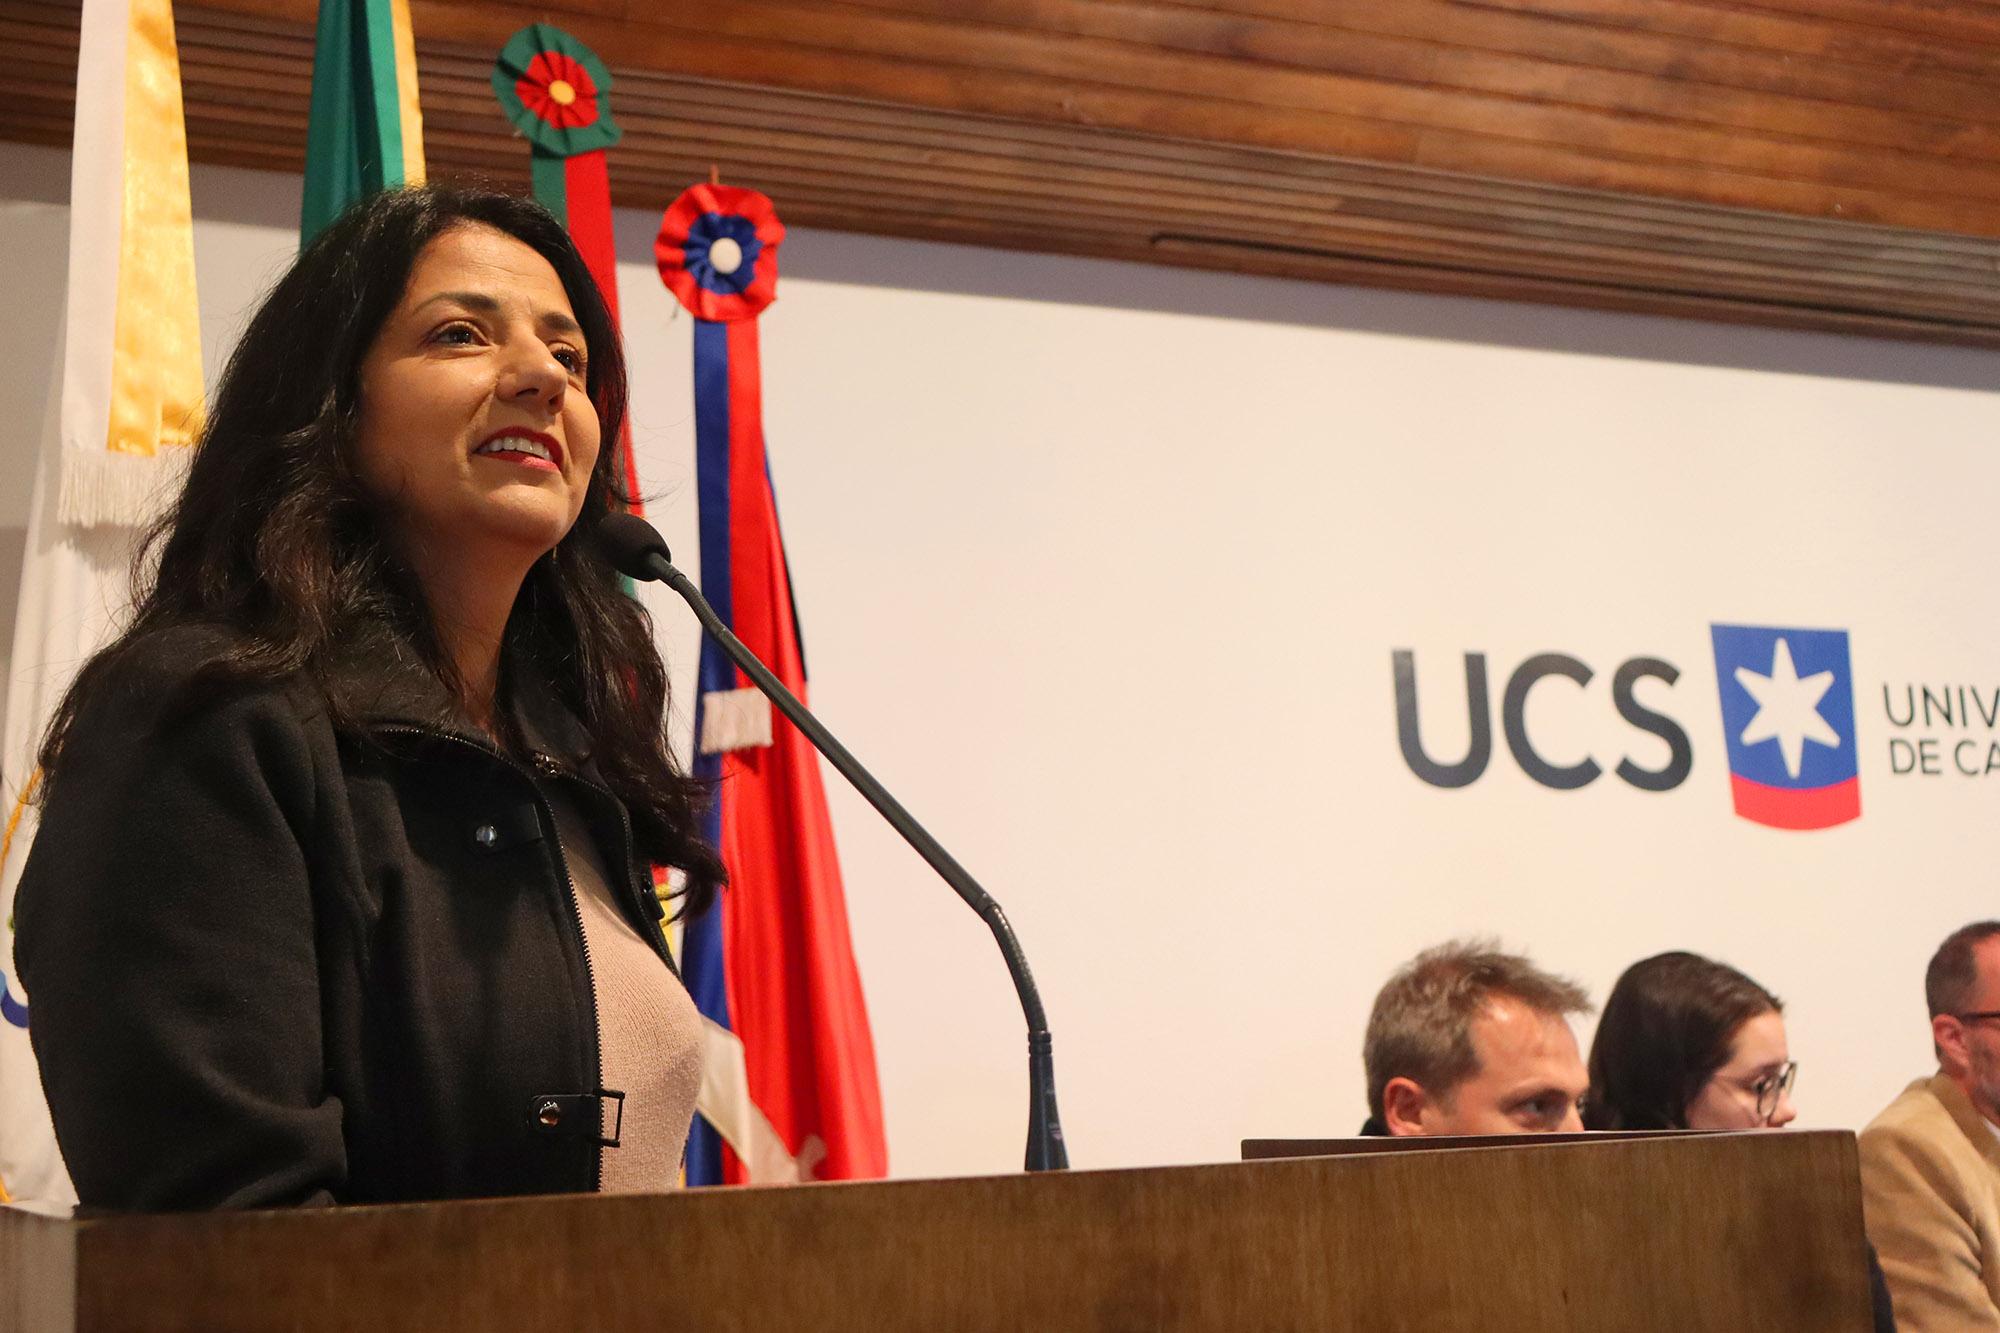 Vereadora Marisol Santos representa Câmara em audiência pública na UCS